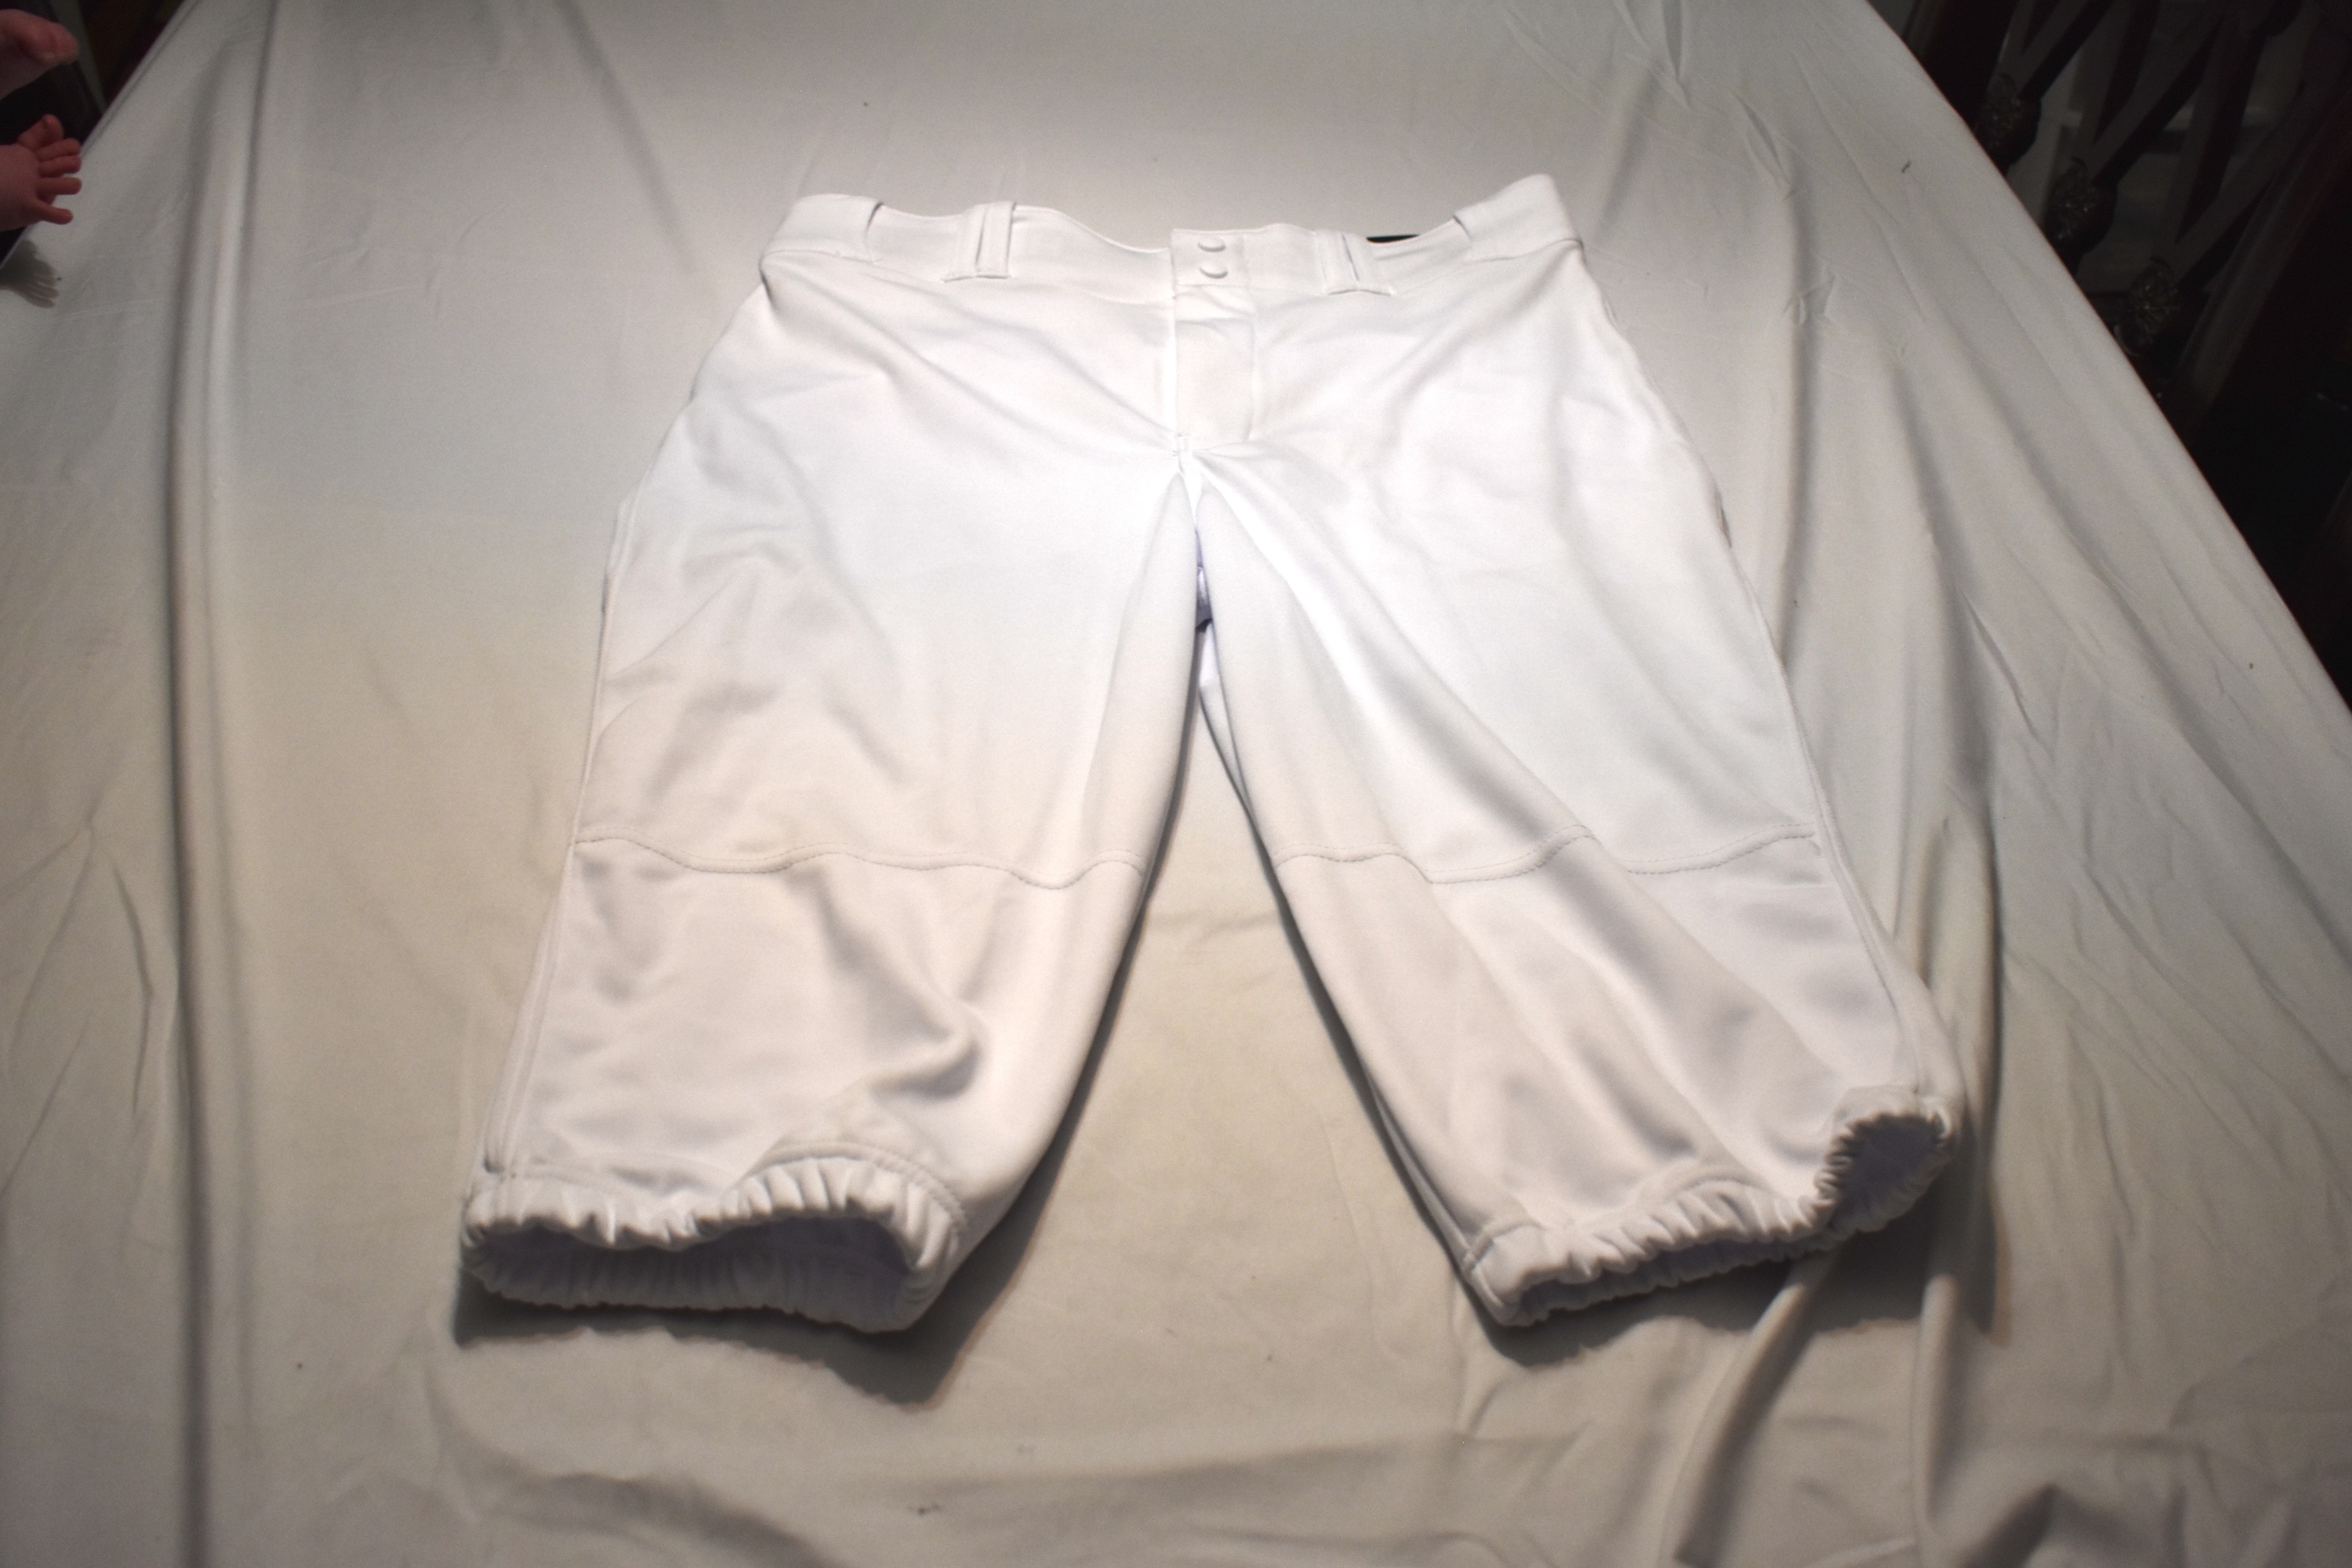 NEW - Champro Knickers Baseball Pants, White, Adult Large